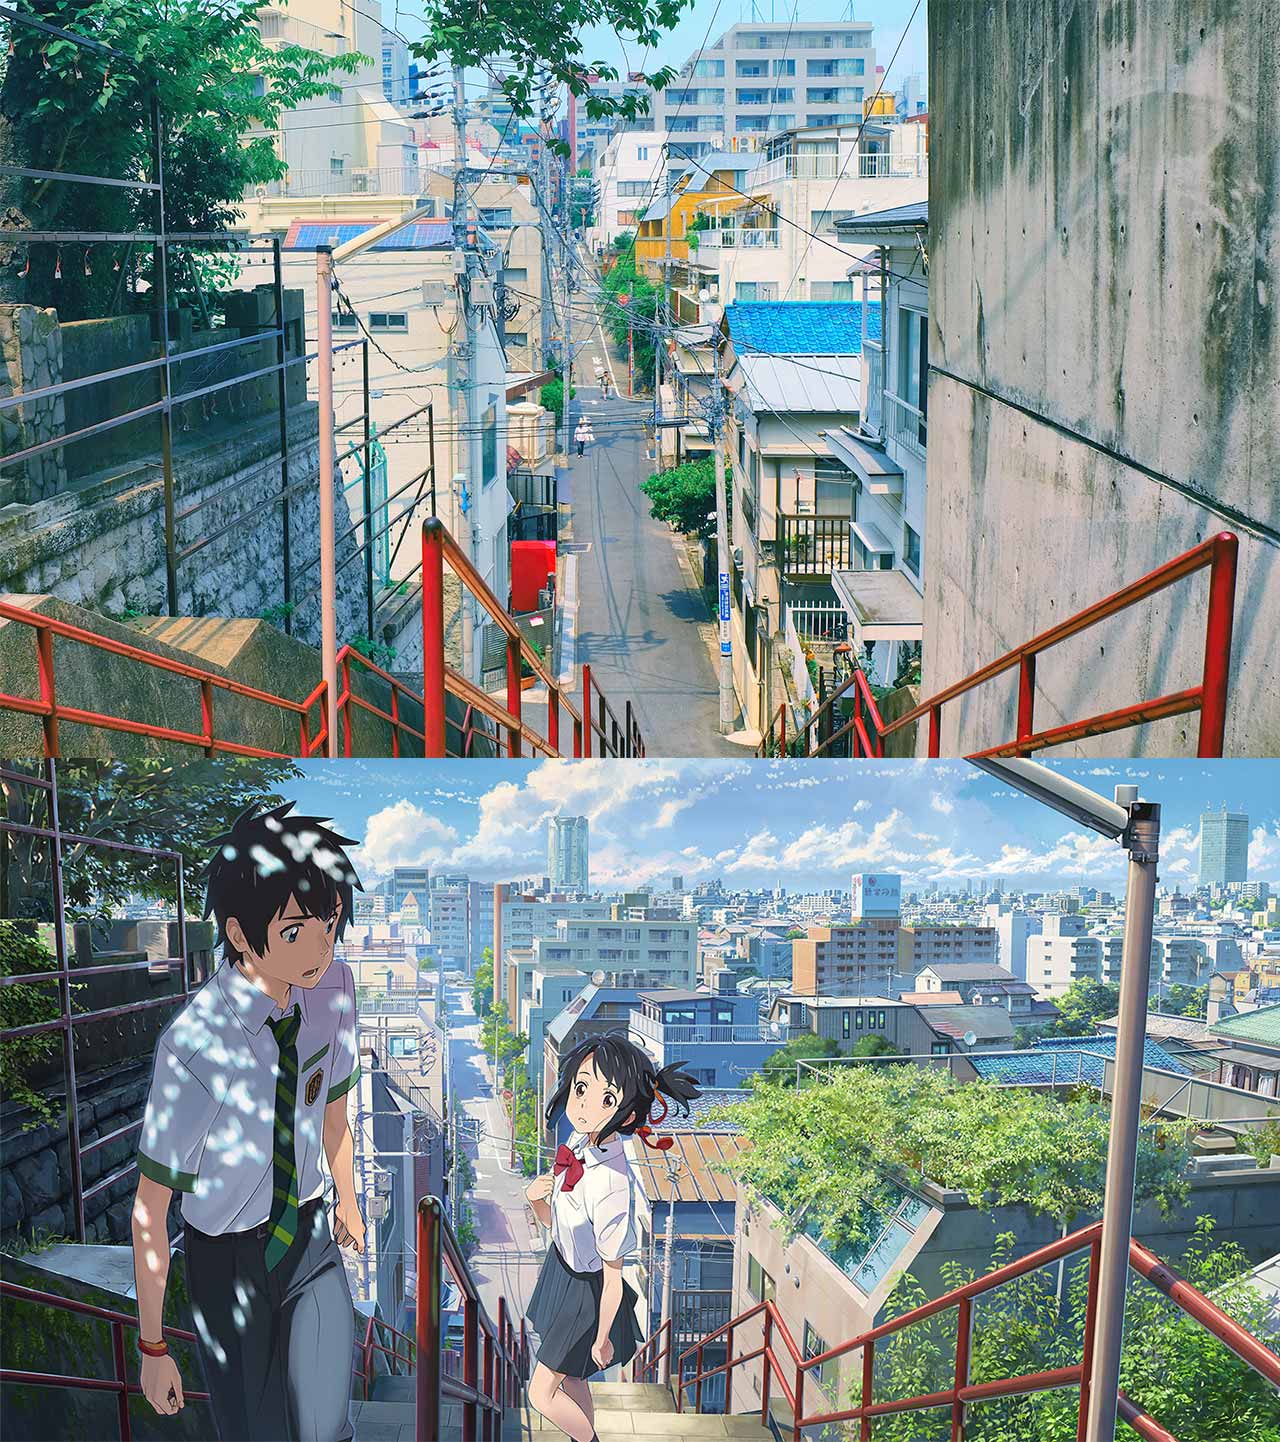 U mê chùm ảnh các địa điểm nổi tiếng Nhật Bản lên anime Your Name: Vẻ đẹp nao lòng không khác gì đời thực! - Ảnh 11.